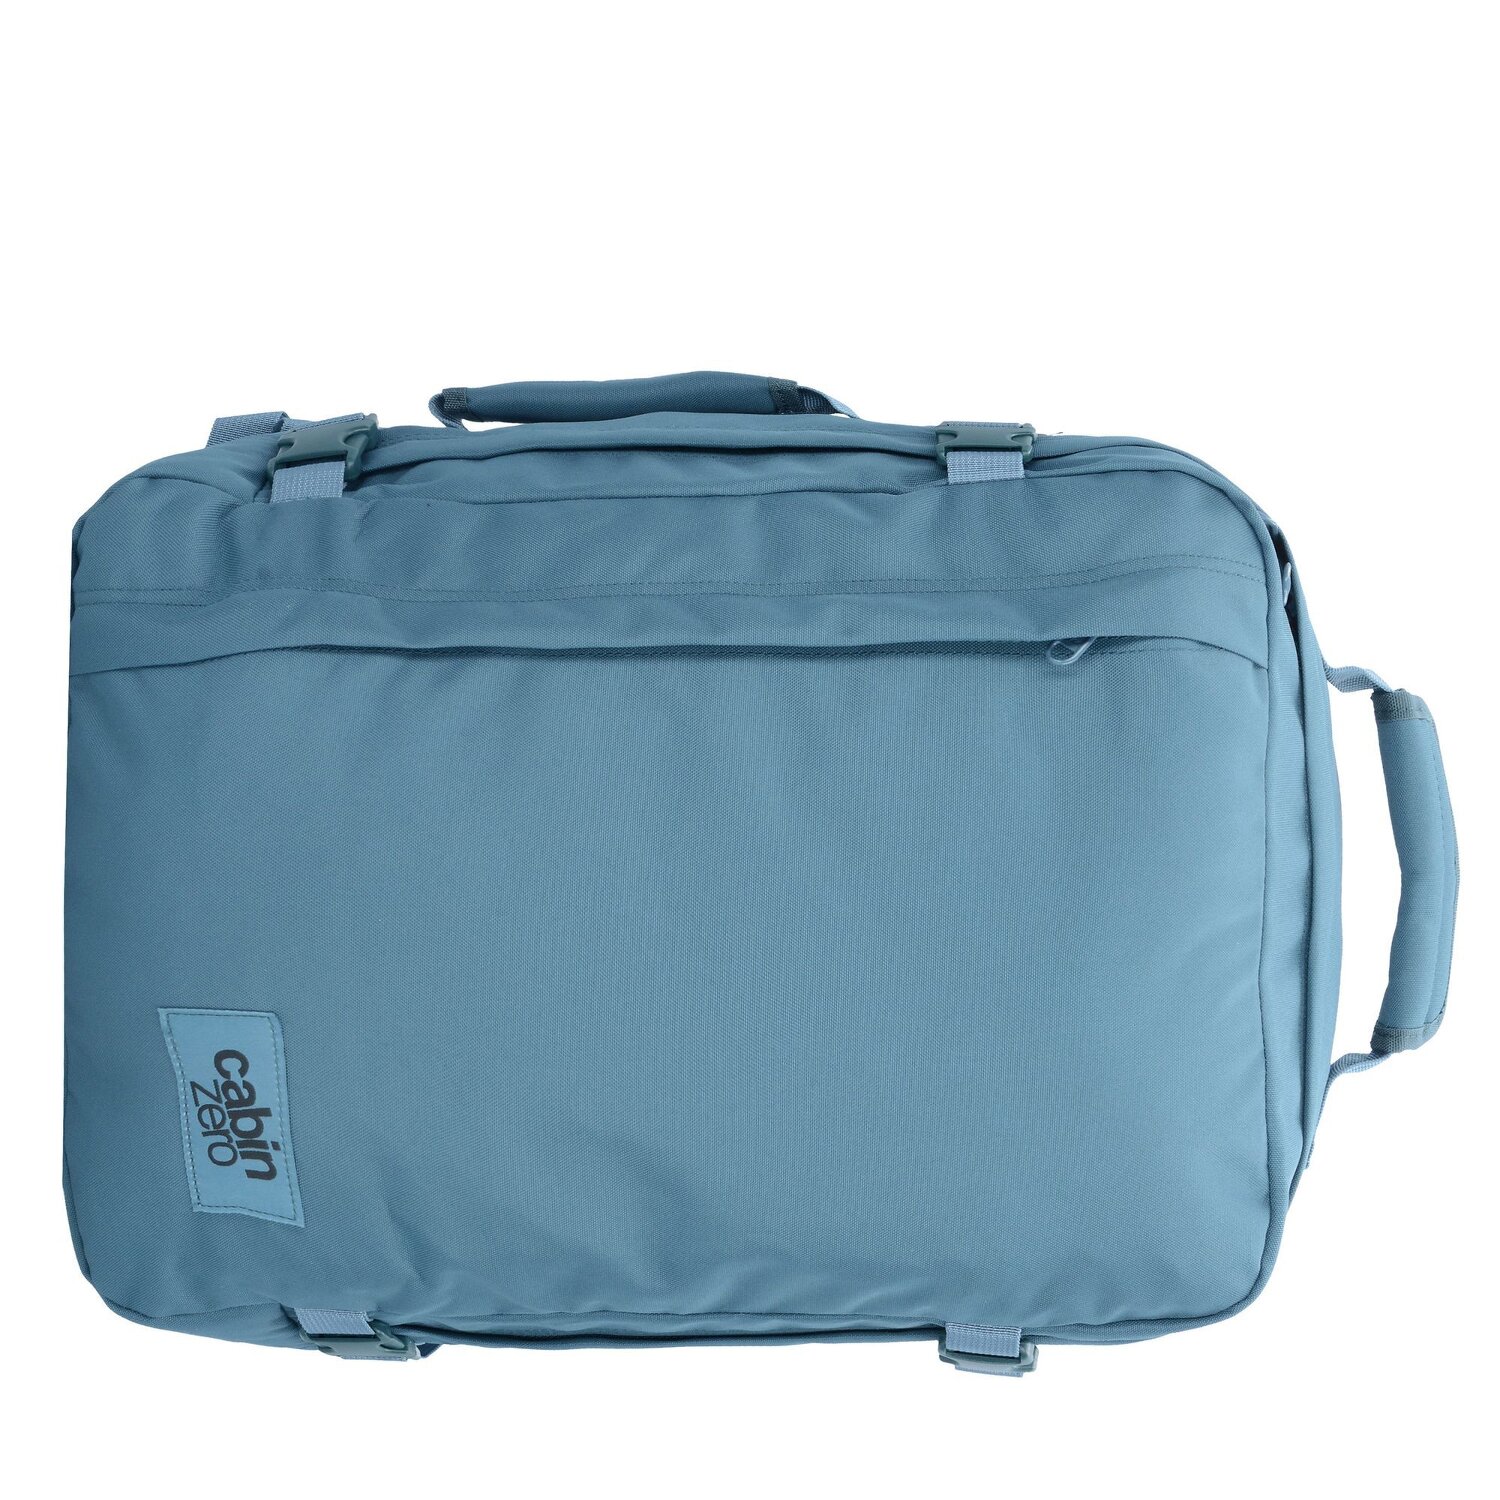 Plecak torba podręczna Cabin Zero Classic 36L Aruba Blue. Najlepsze Ceny! 